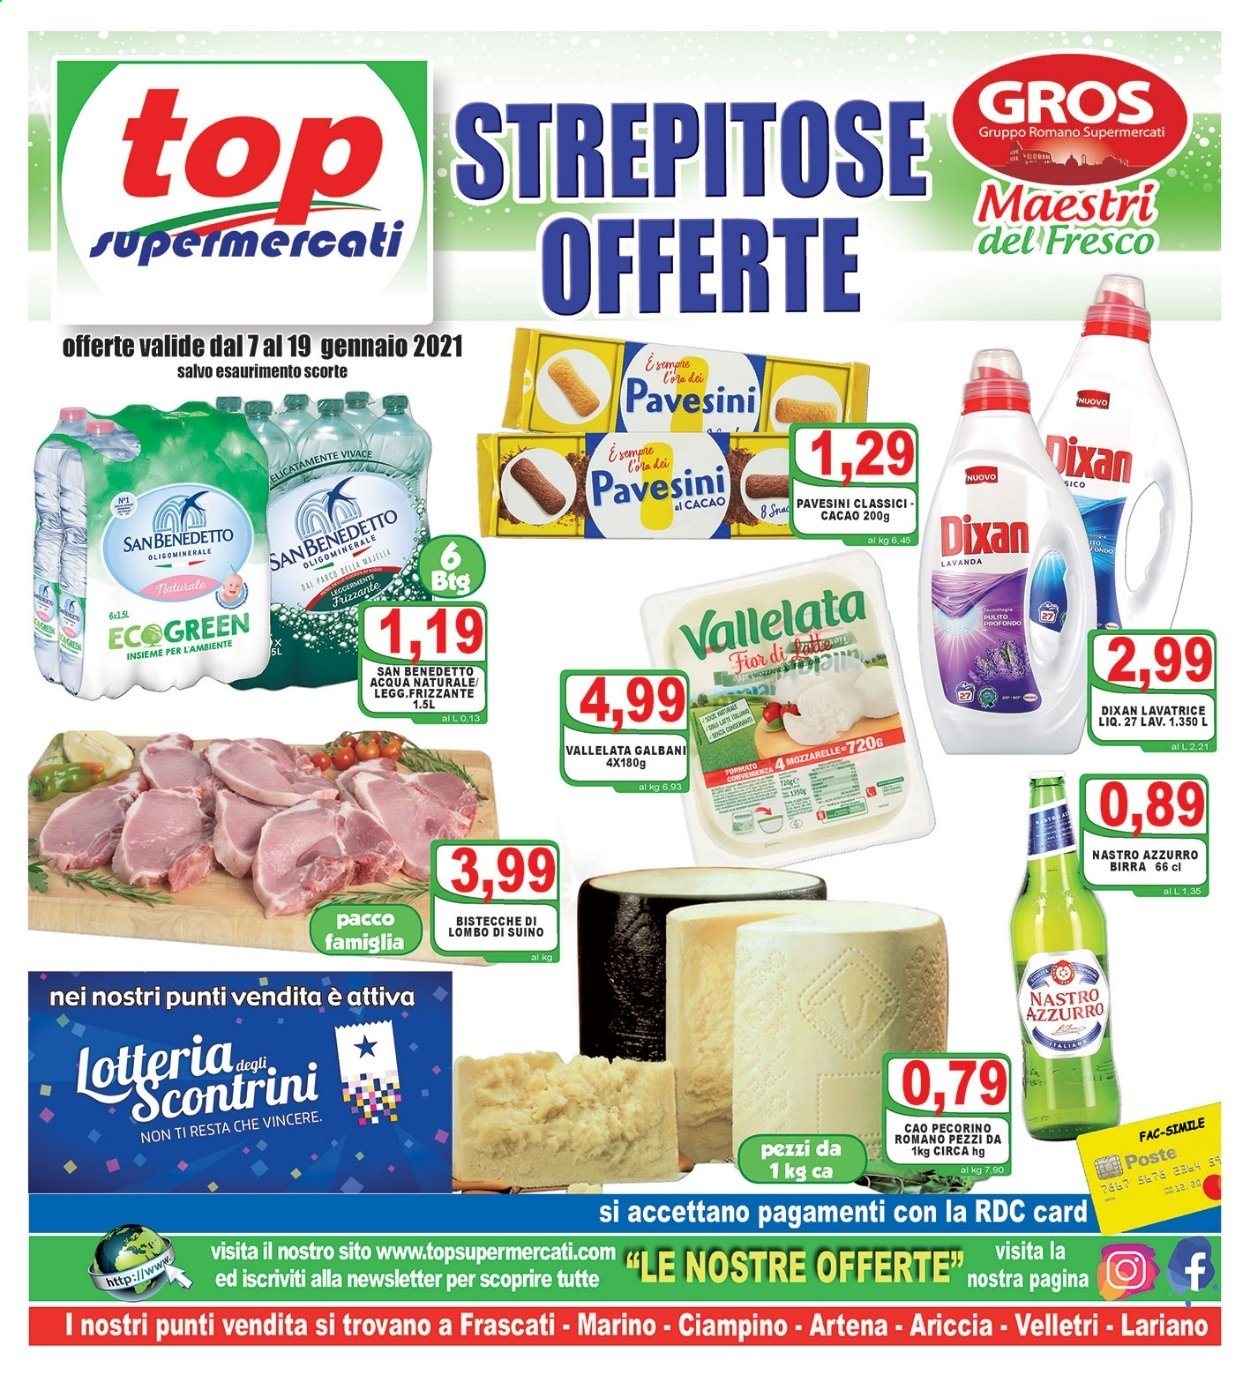 Volantino Top Supermercati - 7.1.2021 - 19.1.2021.